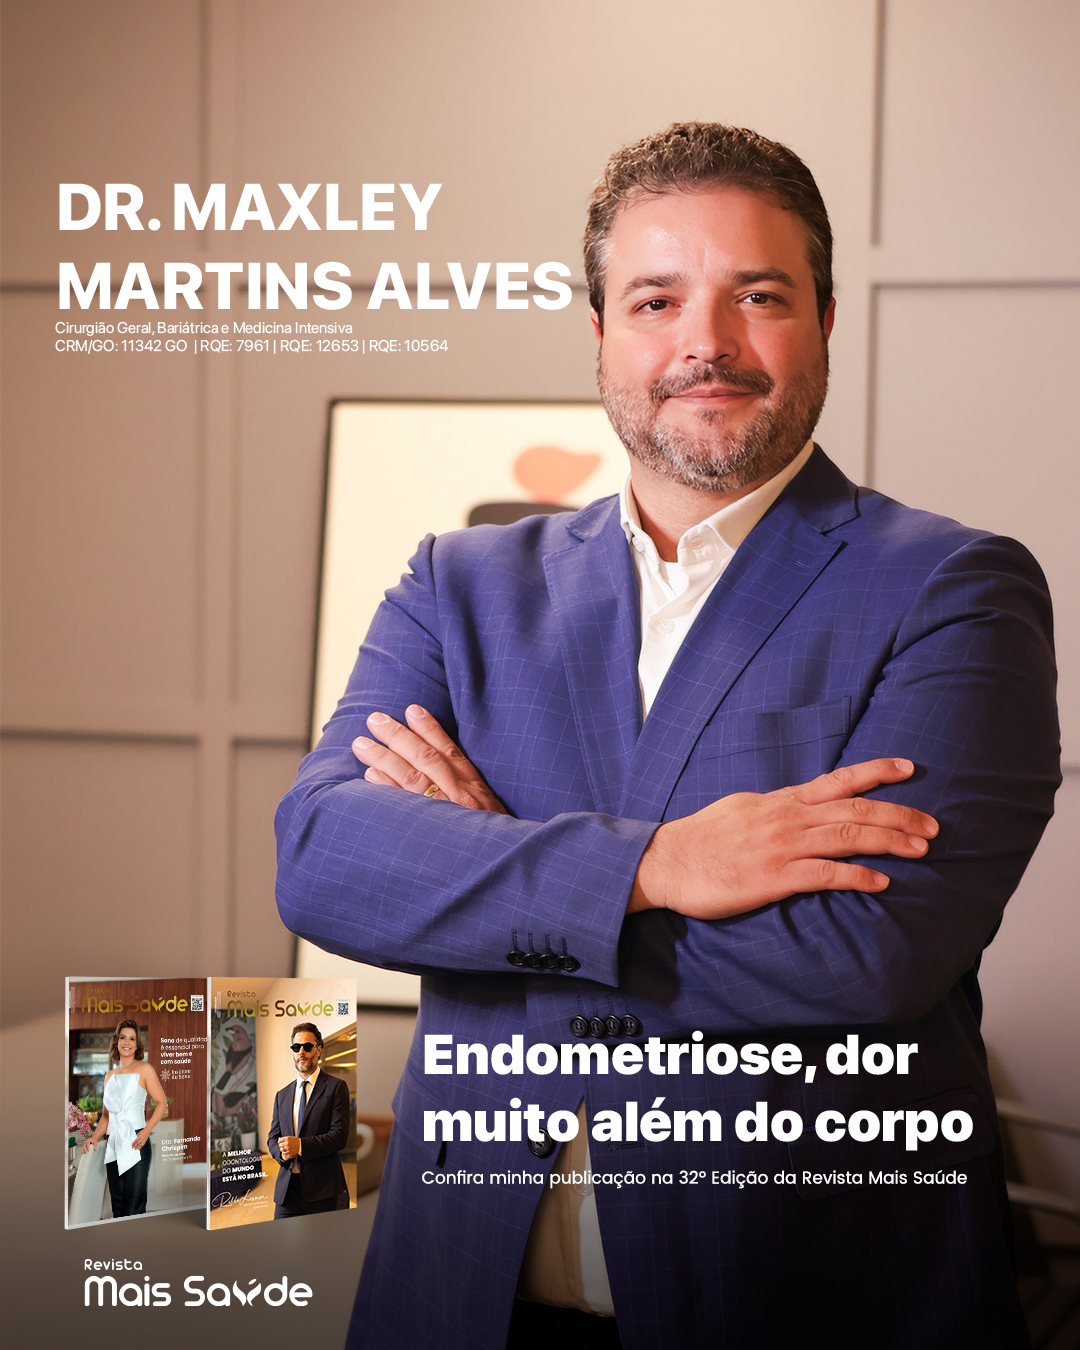 dr-maxley-martins-alves-goiania